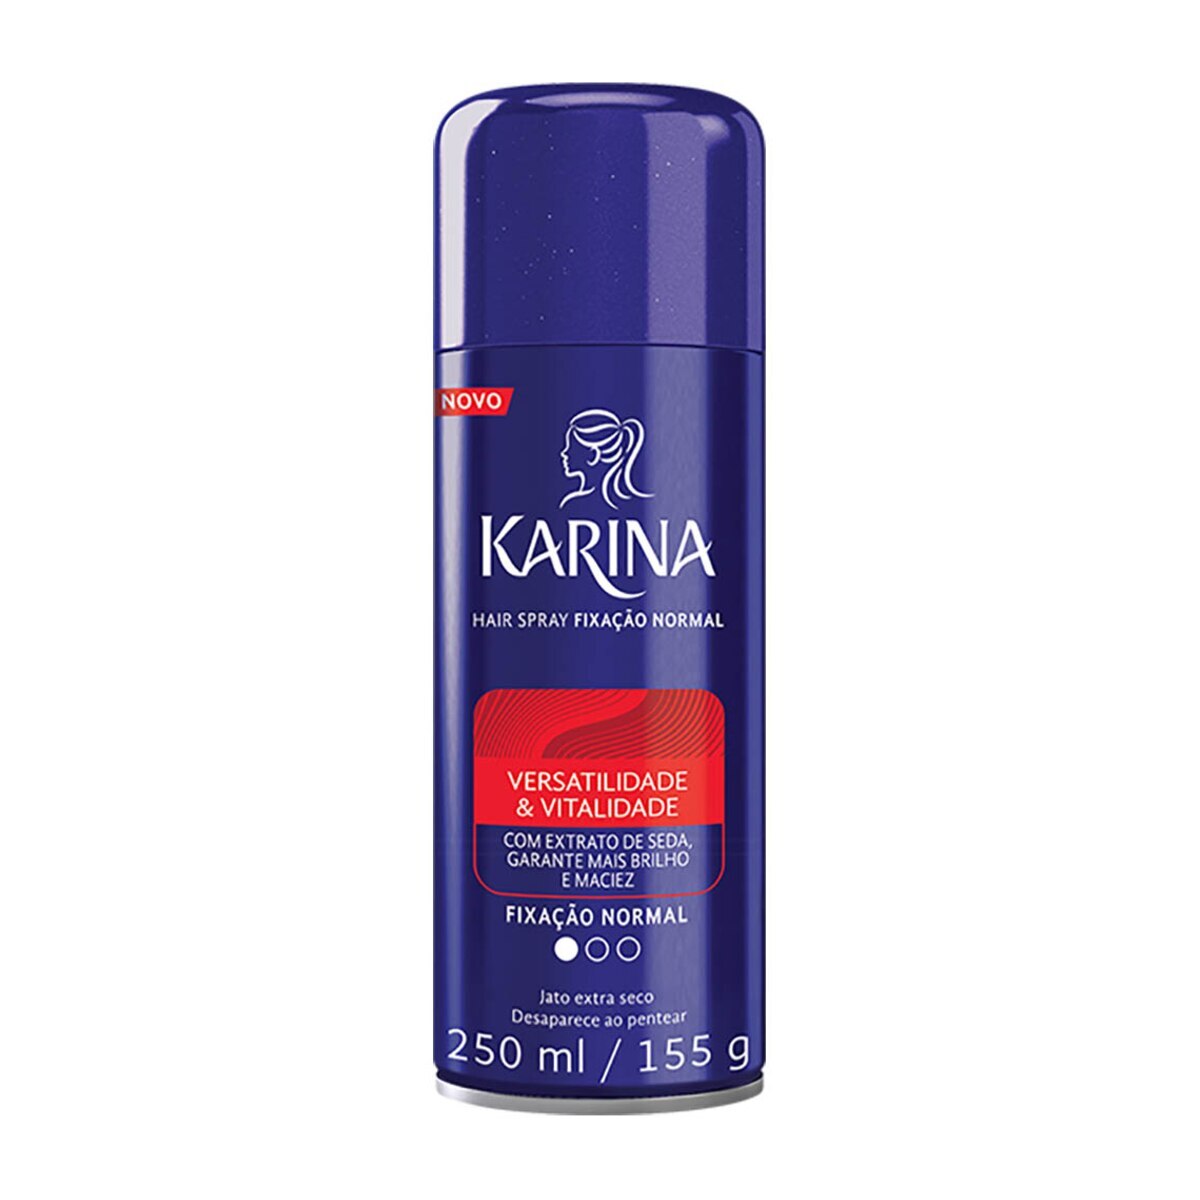 Spray Fixador Karina Versatilidade & Vitalidade Fixacao Normal 250ml